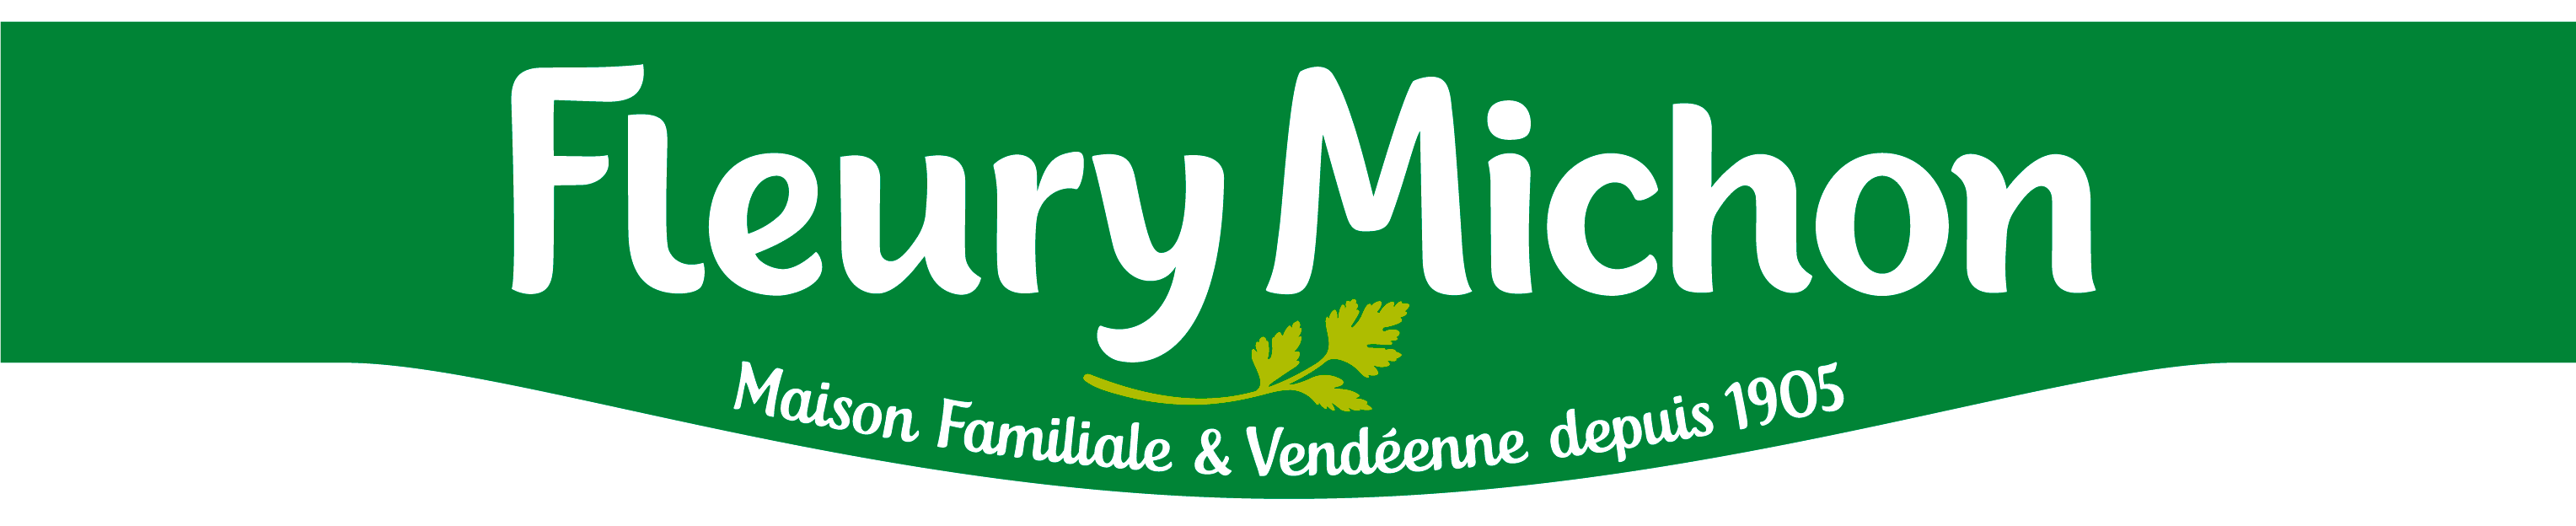 Fleury Michon, Agroalimentaire, chaudronnerie, maintenance, machines, équipements